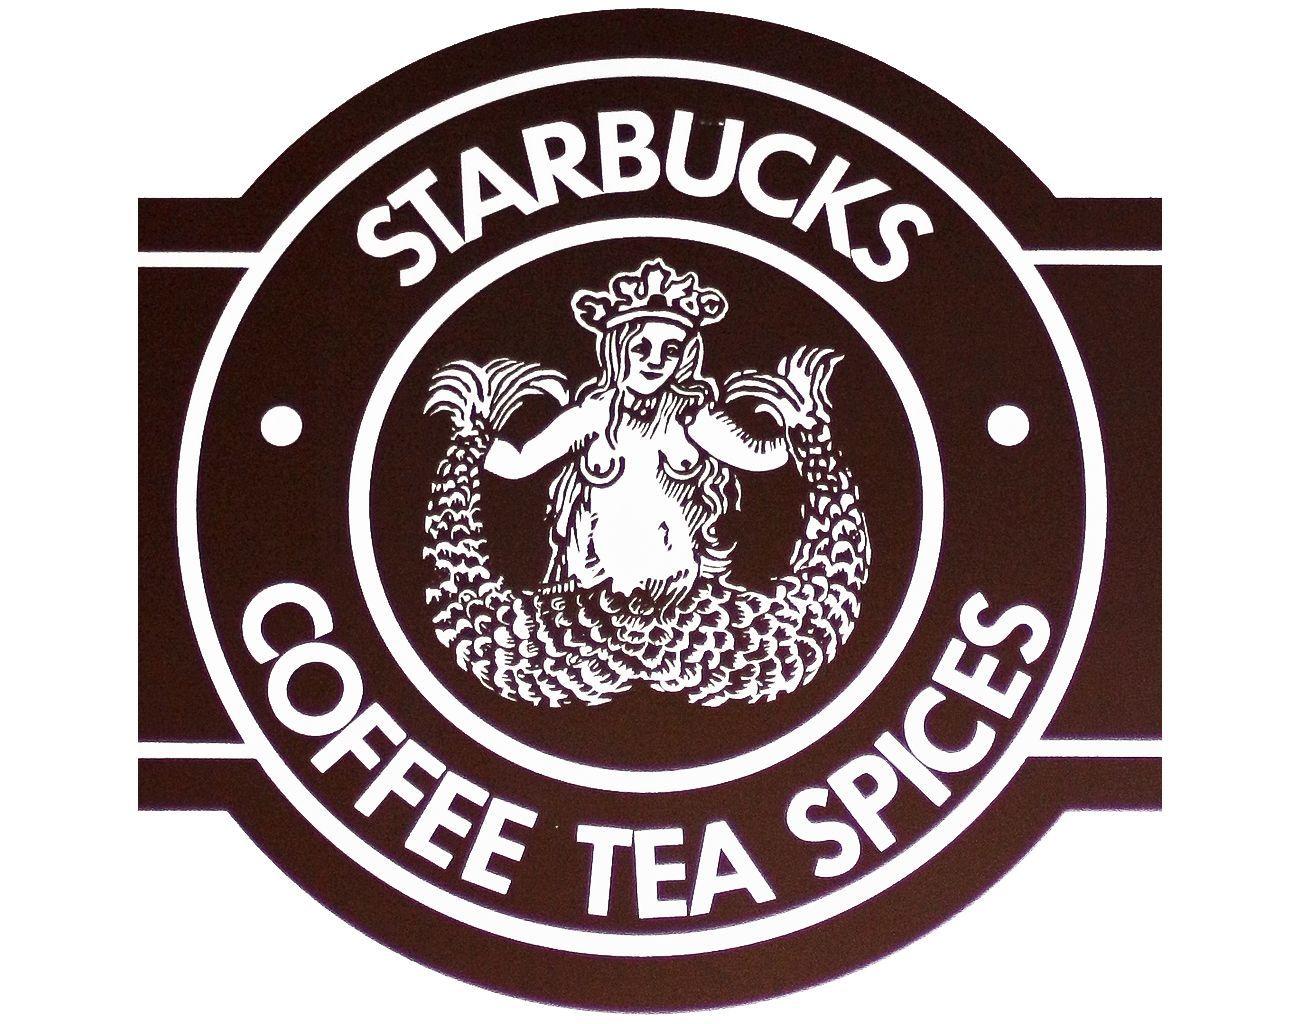 Old Starbucks Logo - old starbucks logo. All logos world. Starbucks logo